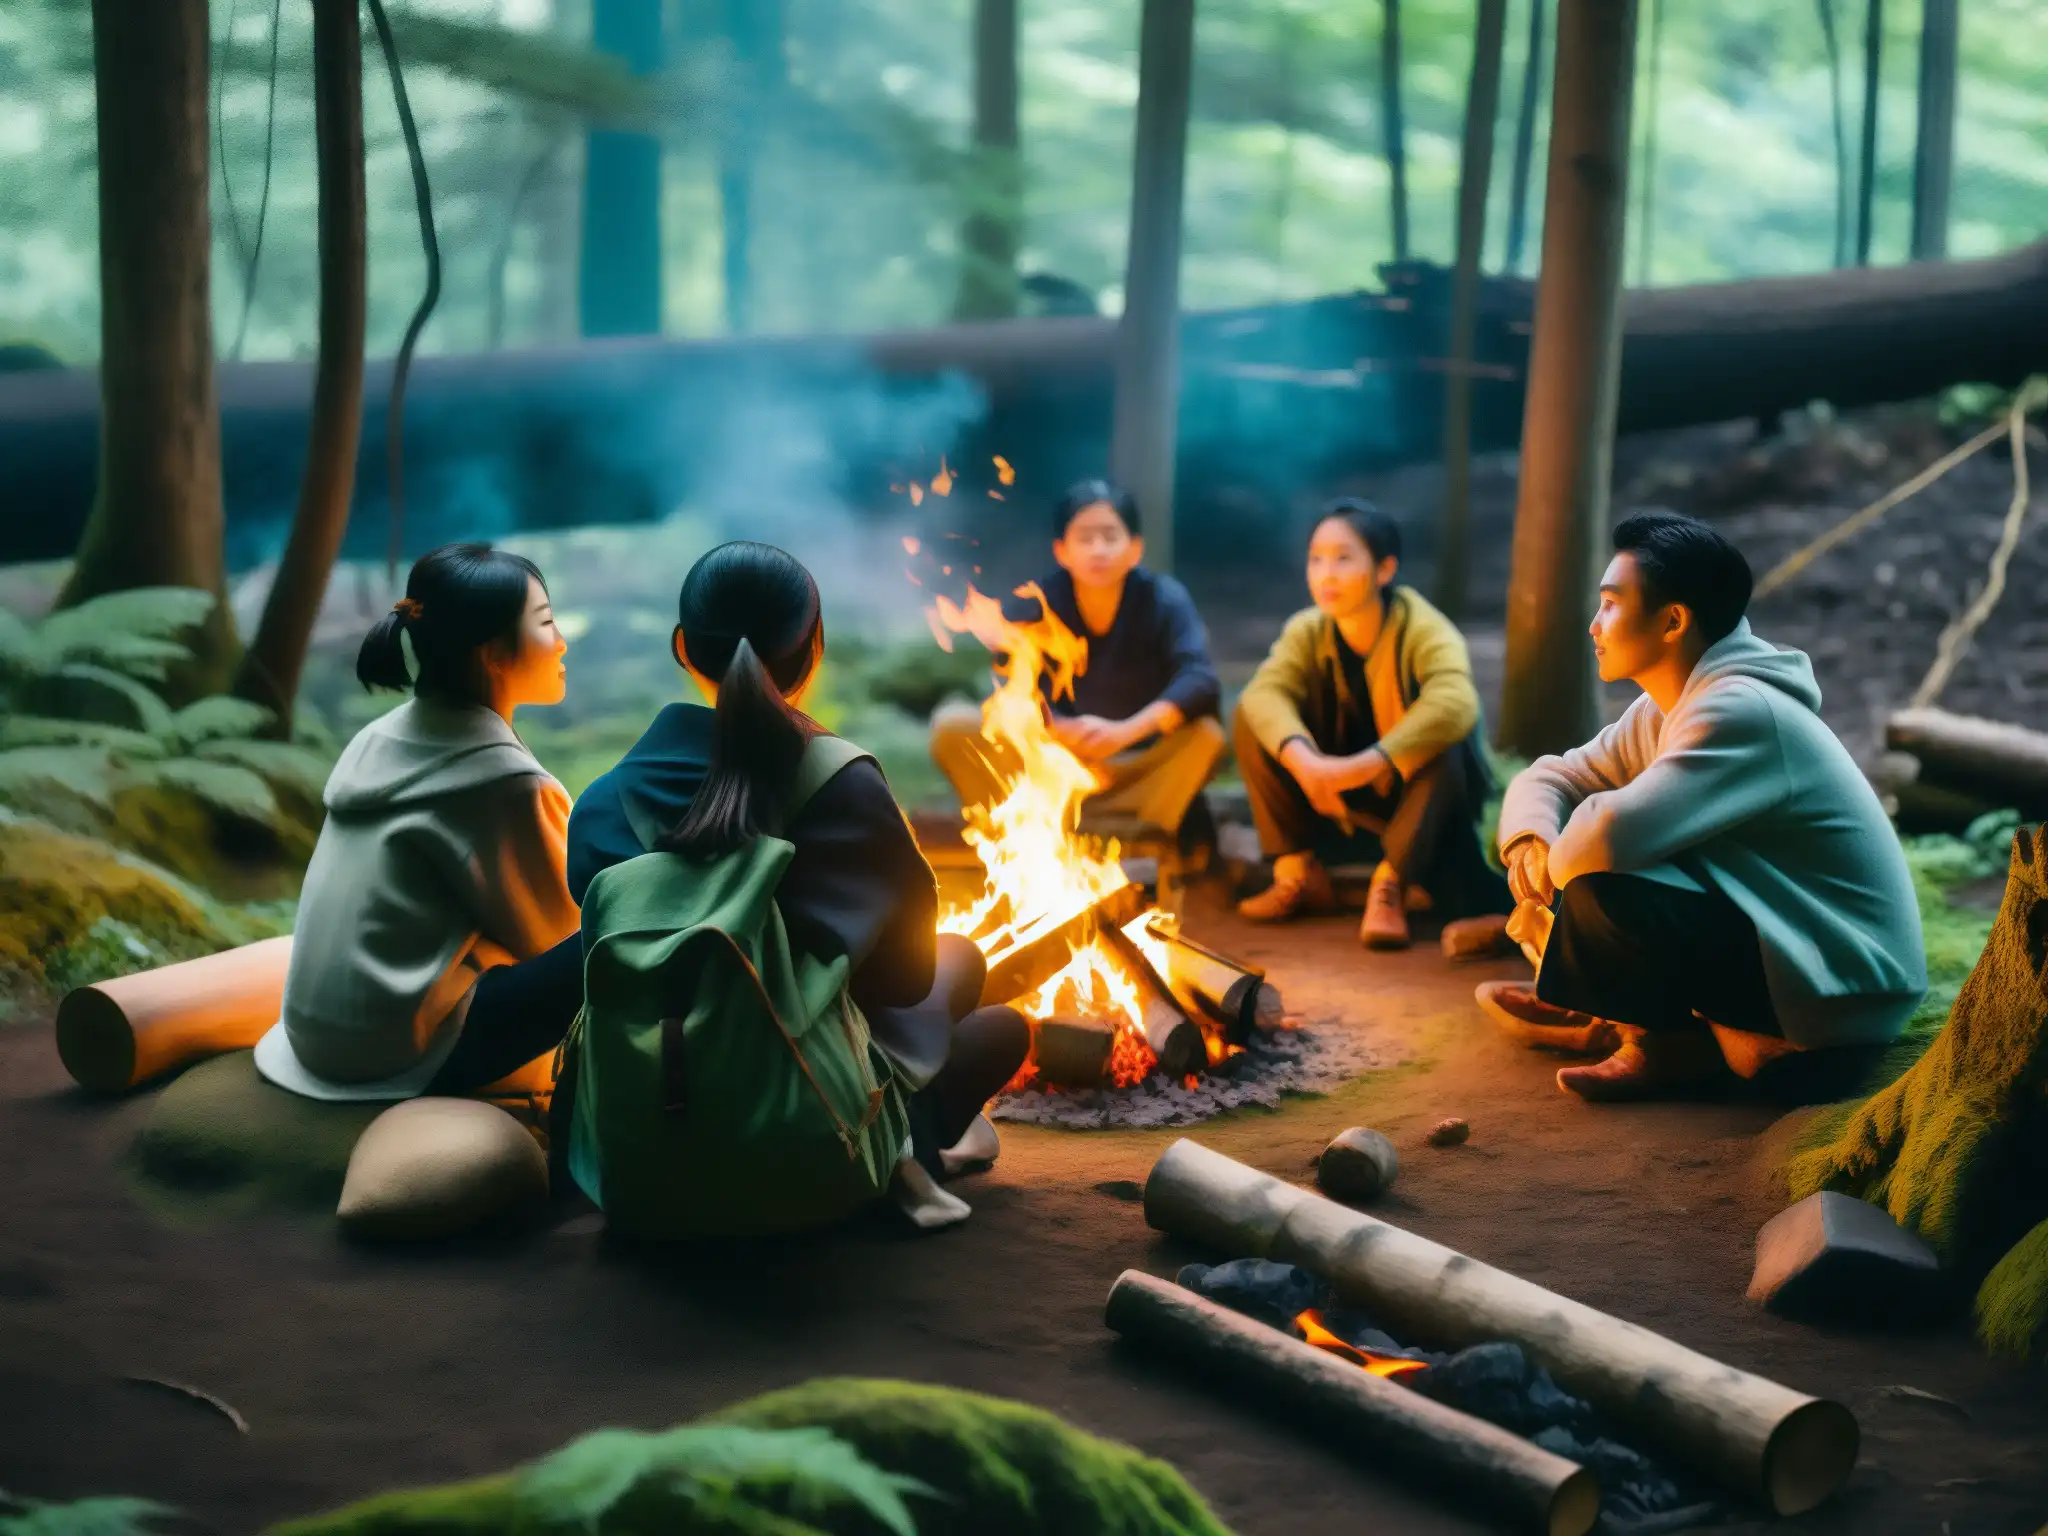 Un grupo de influencers escucha atentamente un mito japonés alrededor de una fogata en un bosque místico